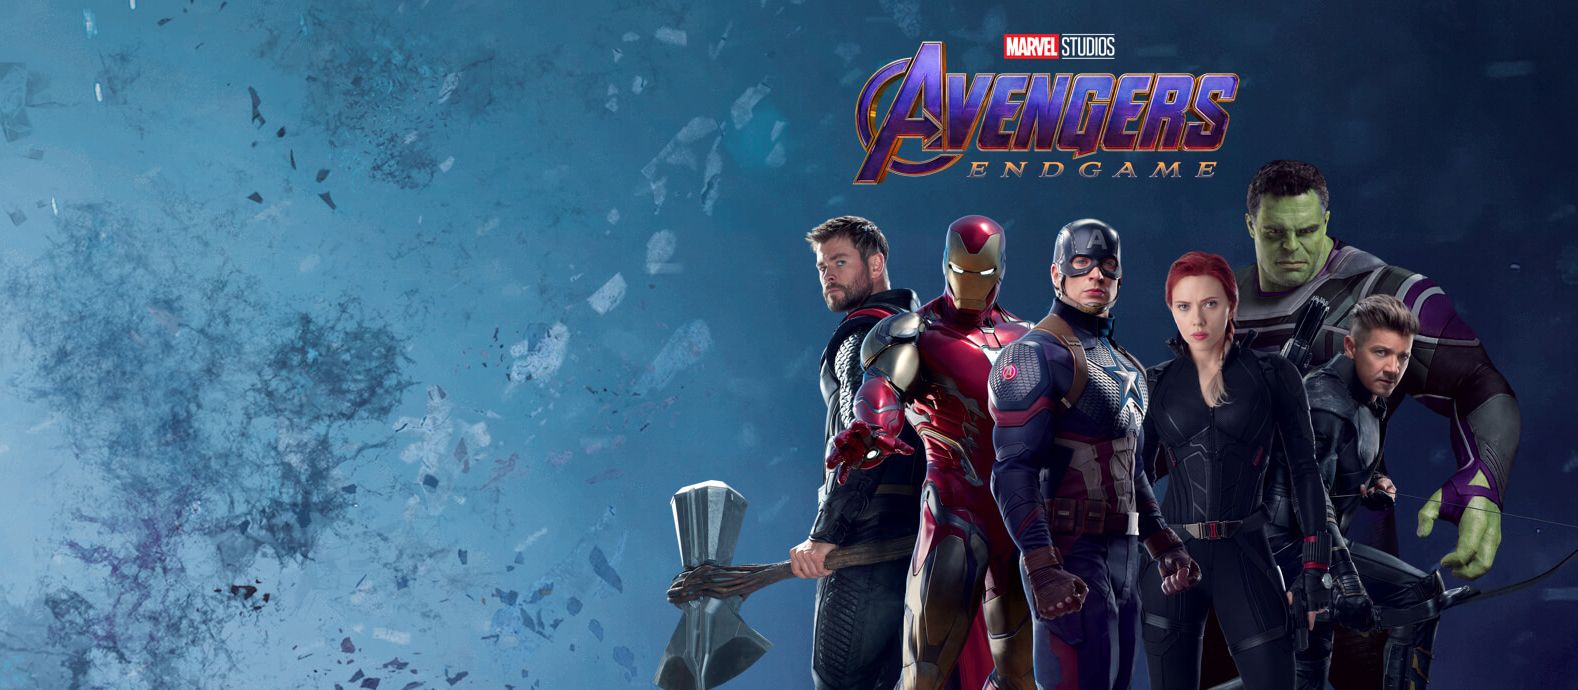 Avengers Endgame team banner